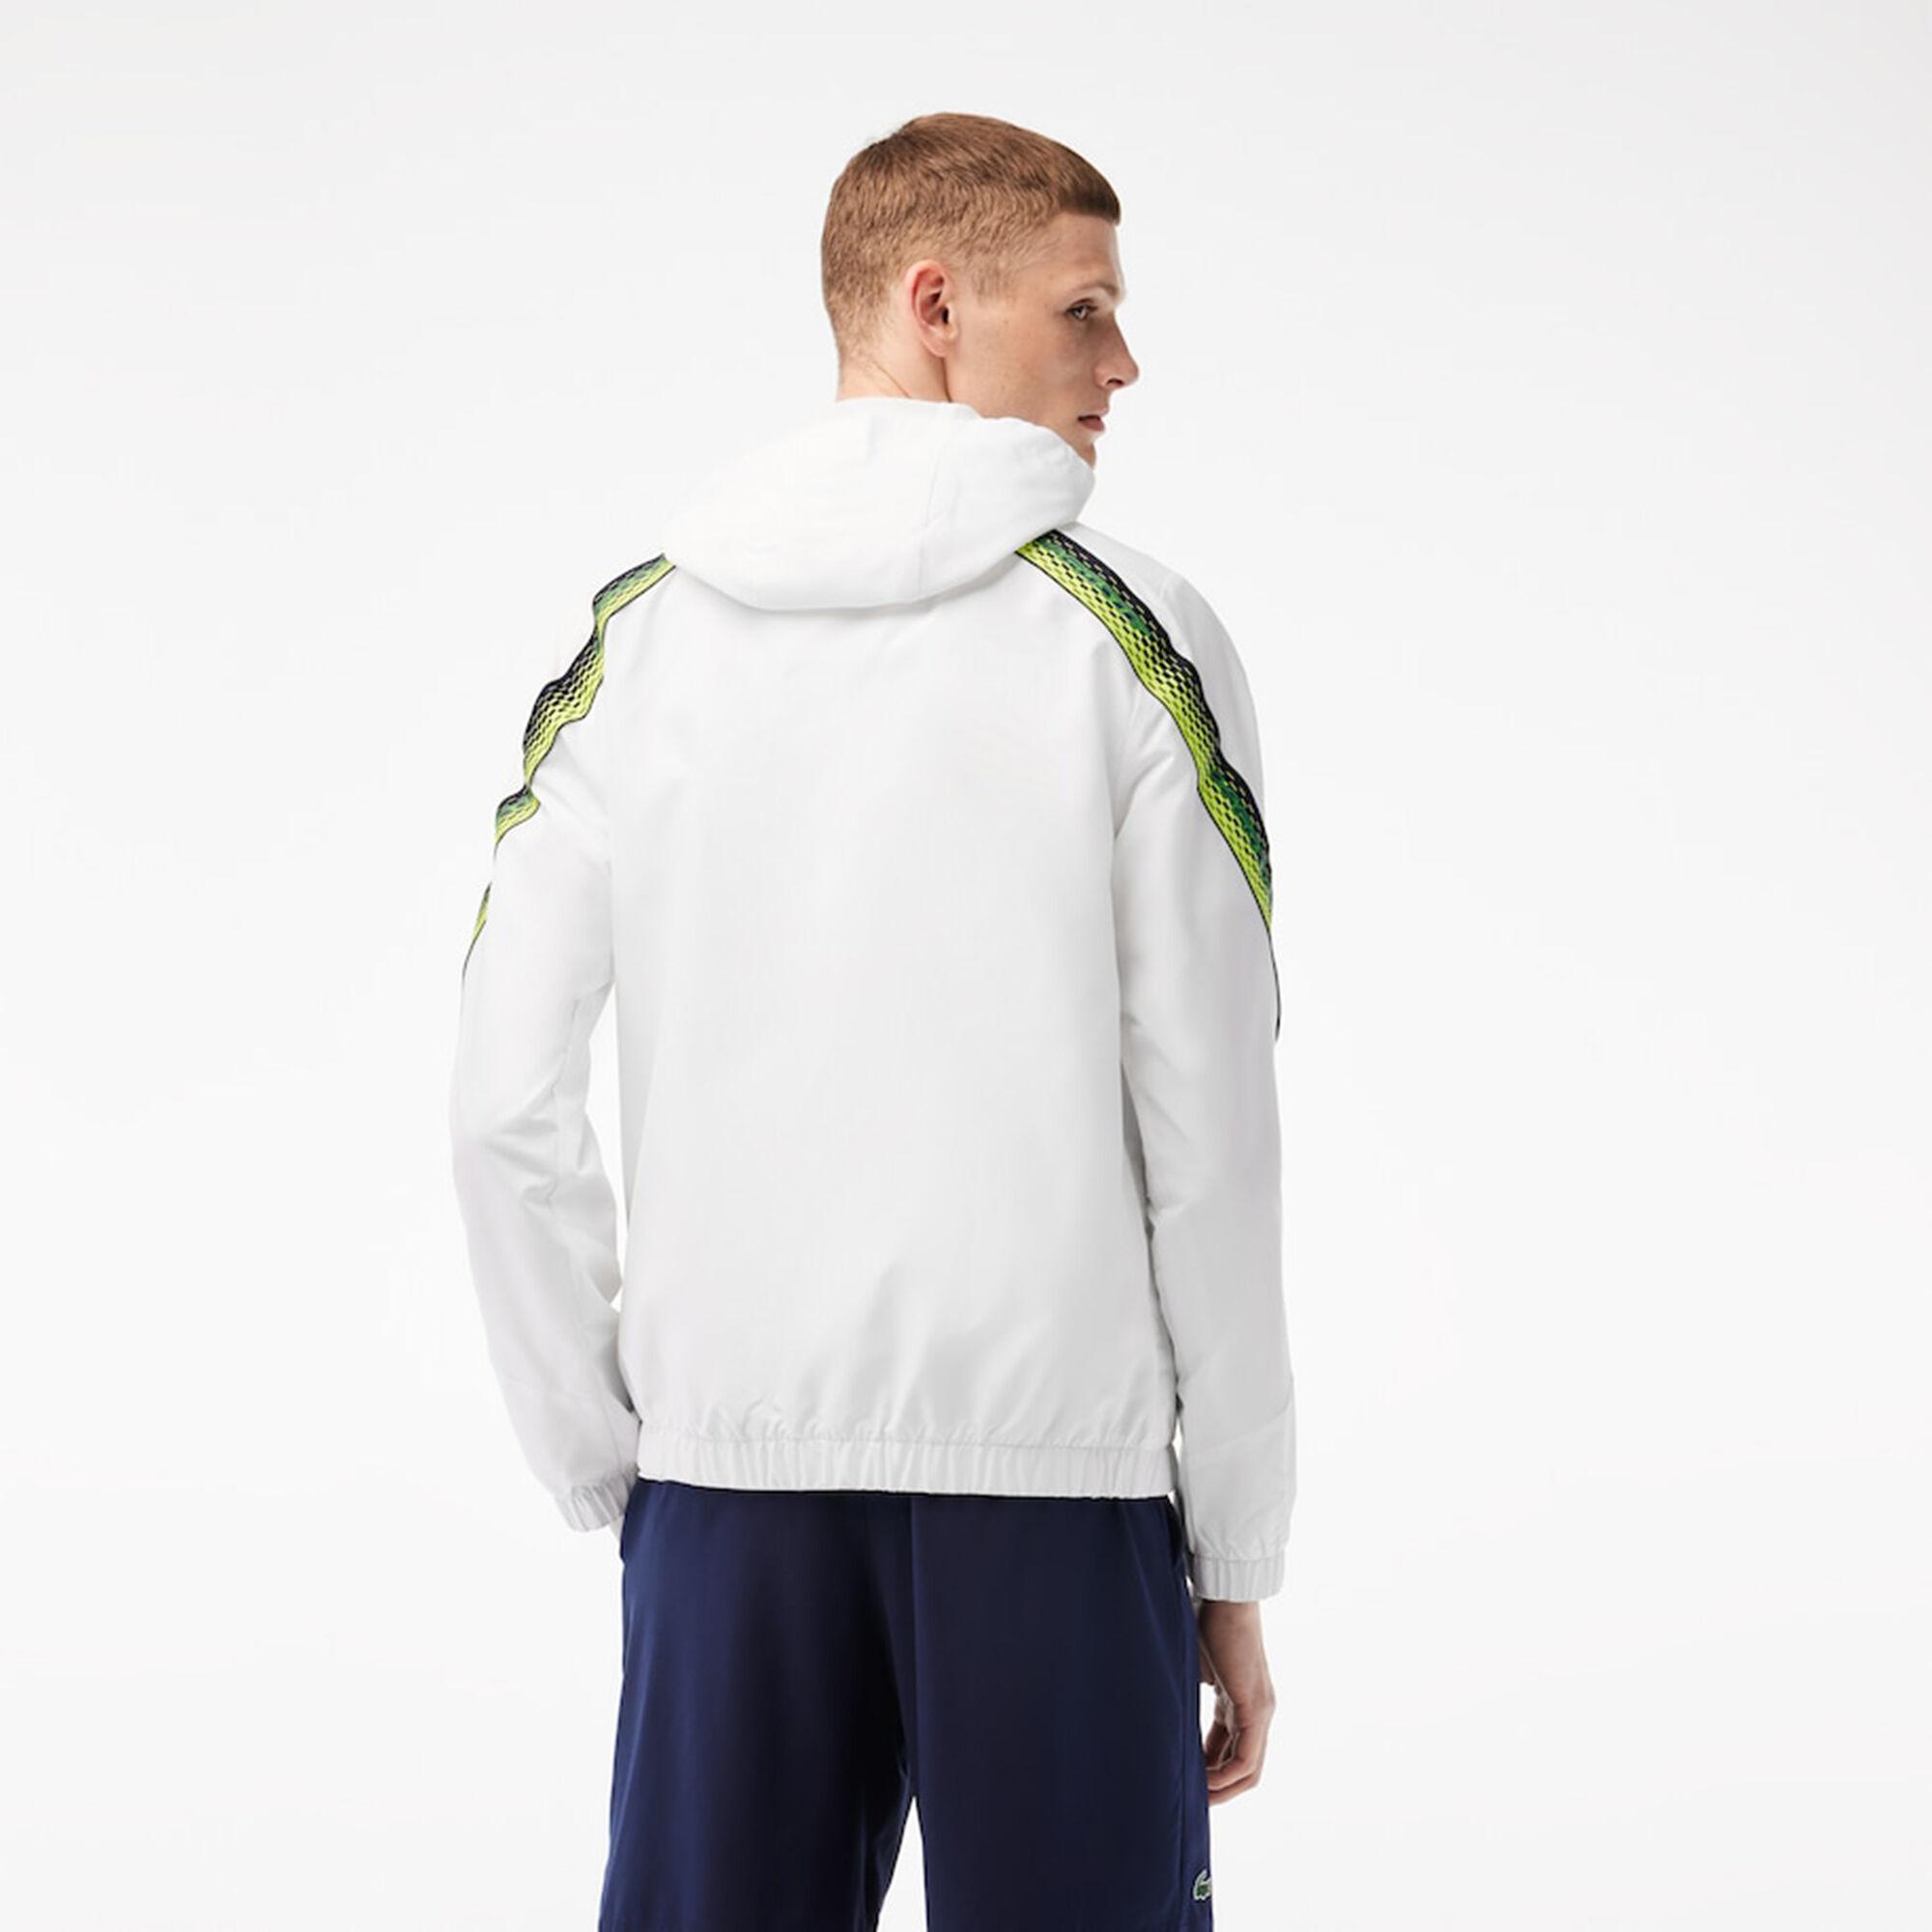 online | Blau kaufen Trainingsjacke Herren AT Lacoste Point Weiß, Tennis